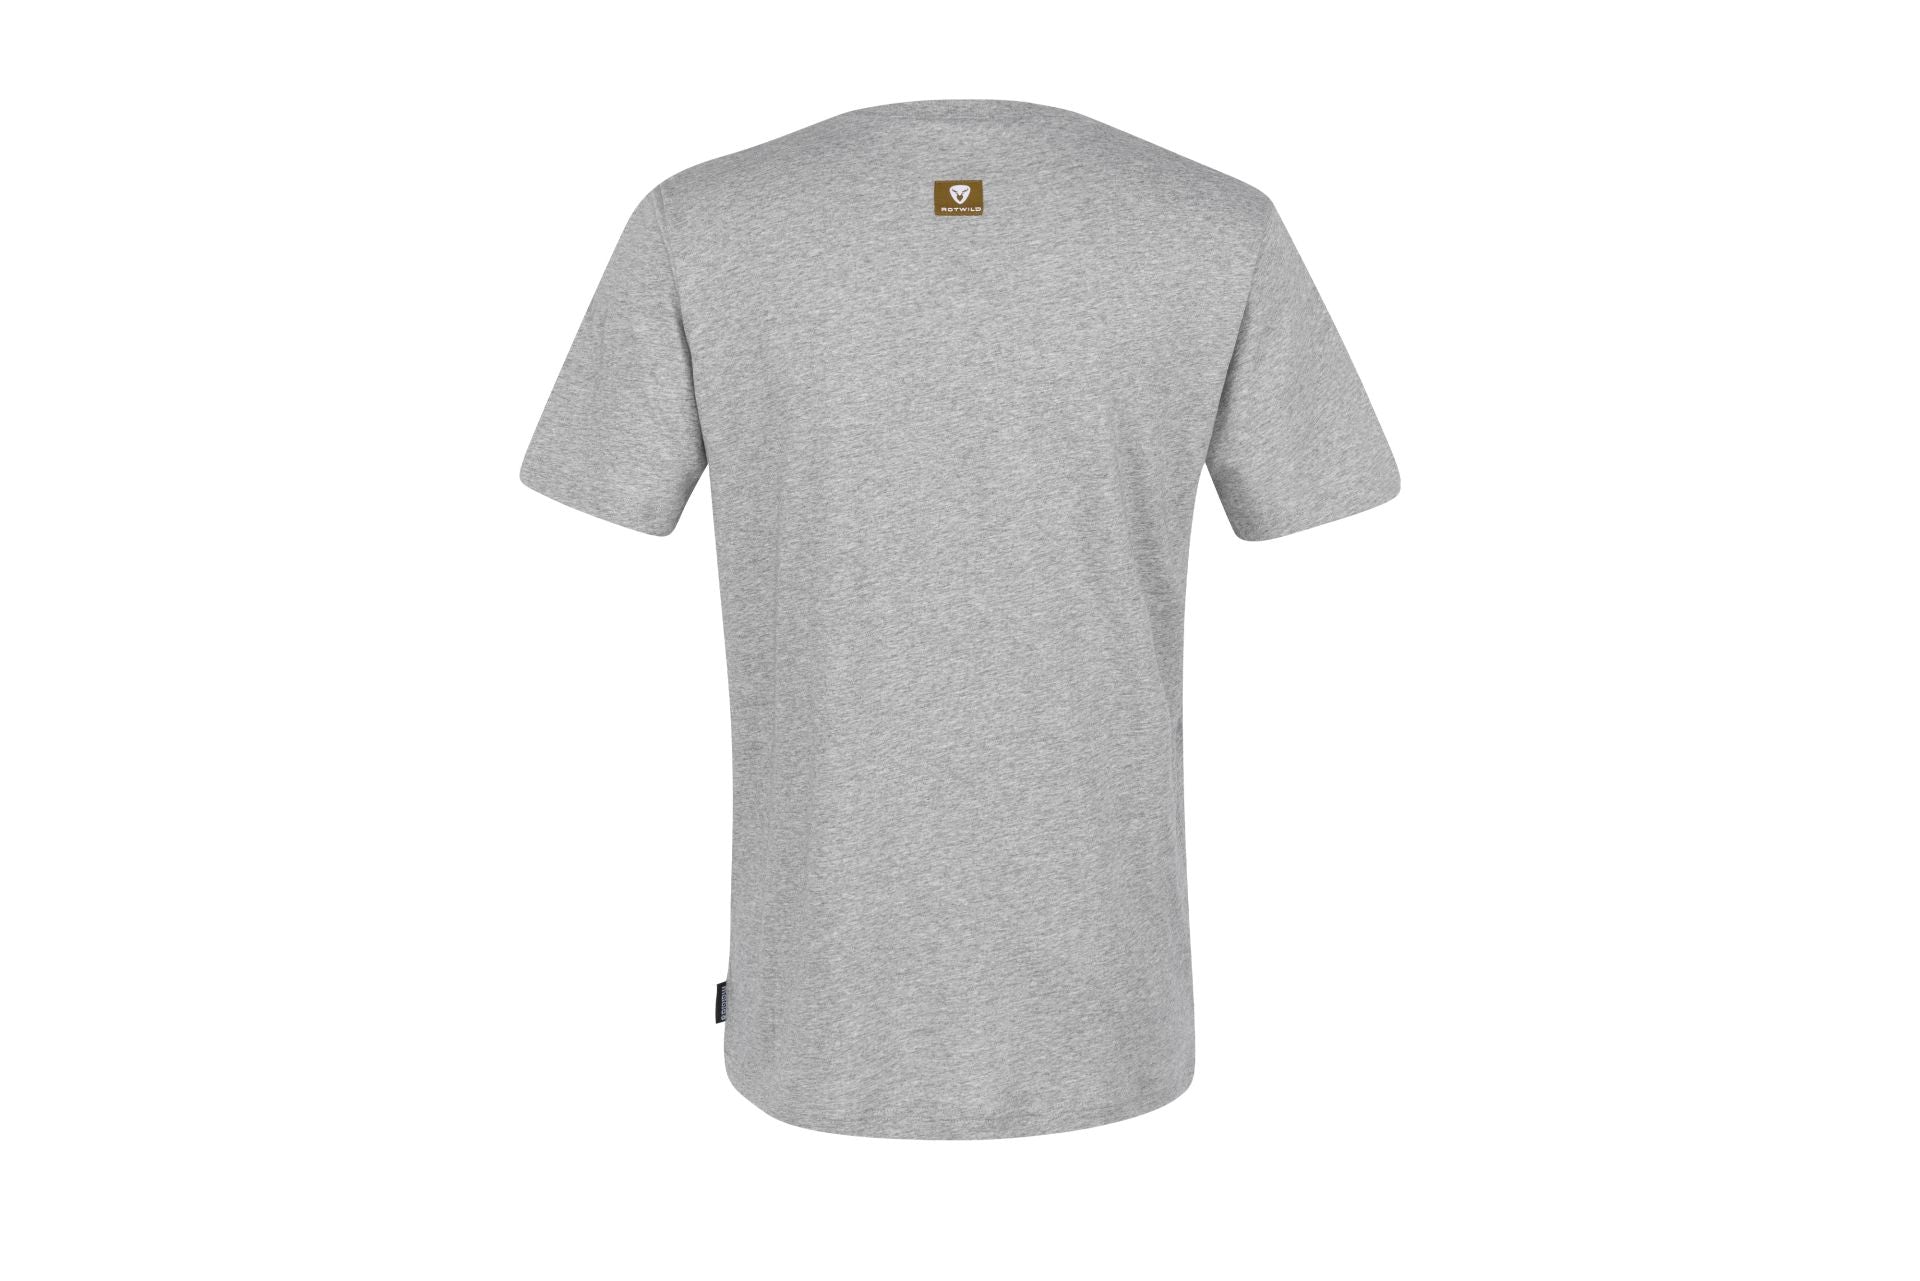 Rotwild T-Shirt Men / ILLERM.ROTWILD grey